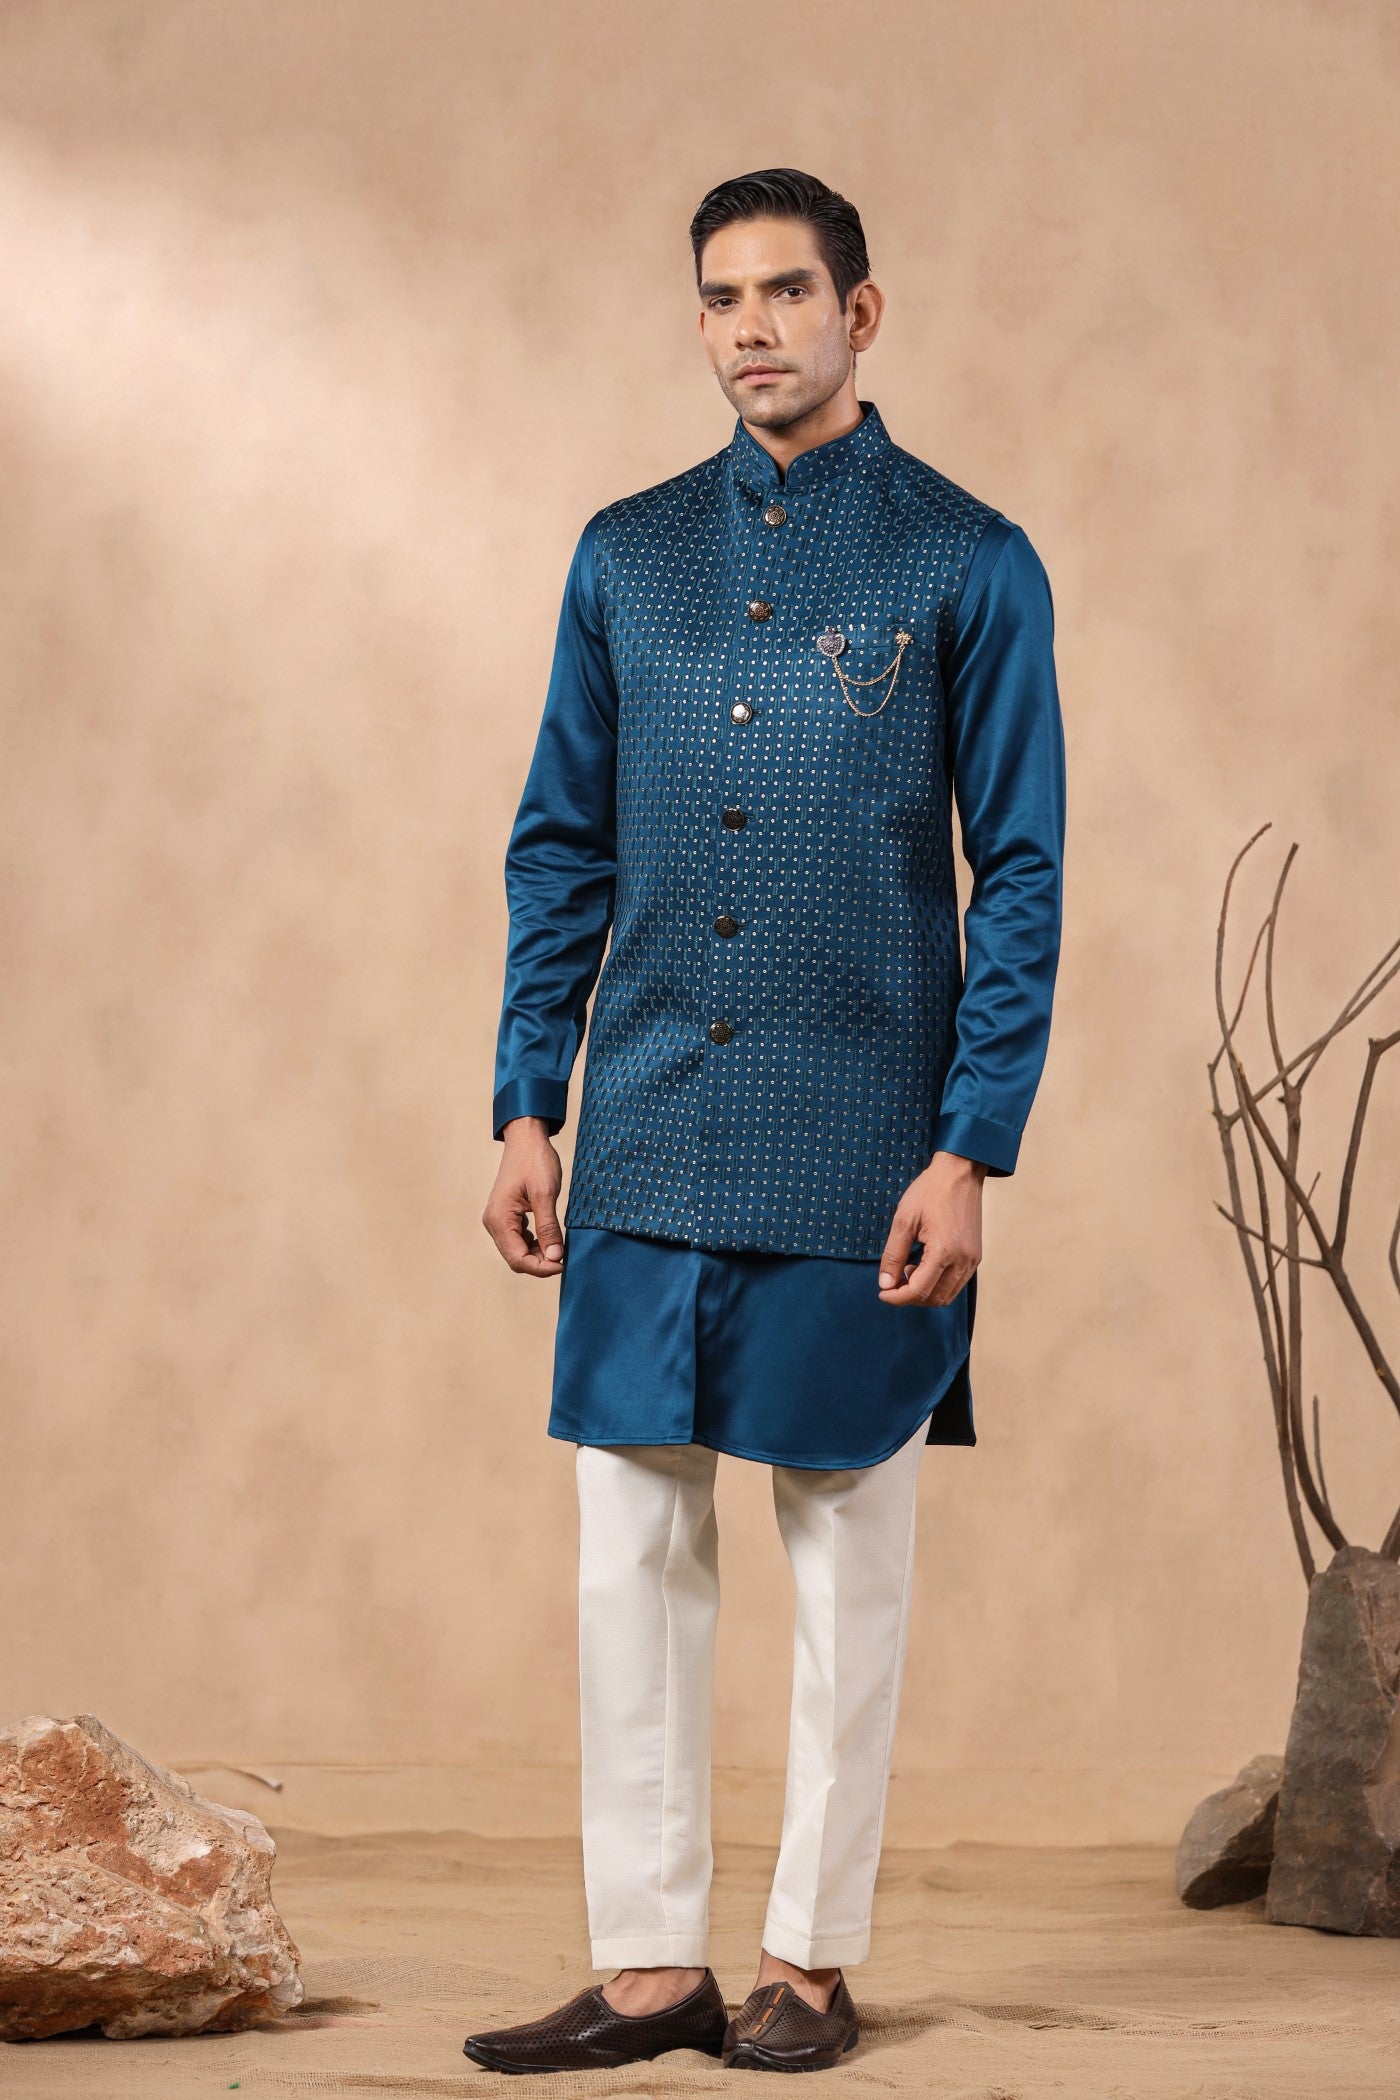 Black Silk Printed Mens Wedding Wear Kurta Pajama With Jacket, Machine Wash  at Rs 1299/set in Surat